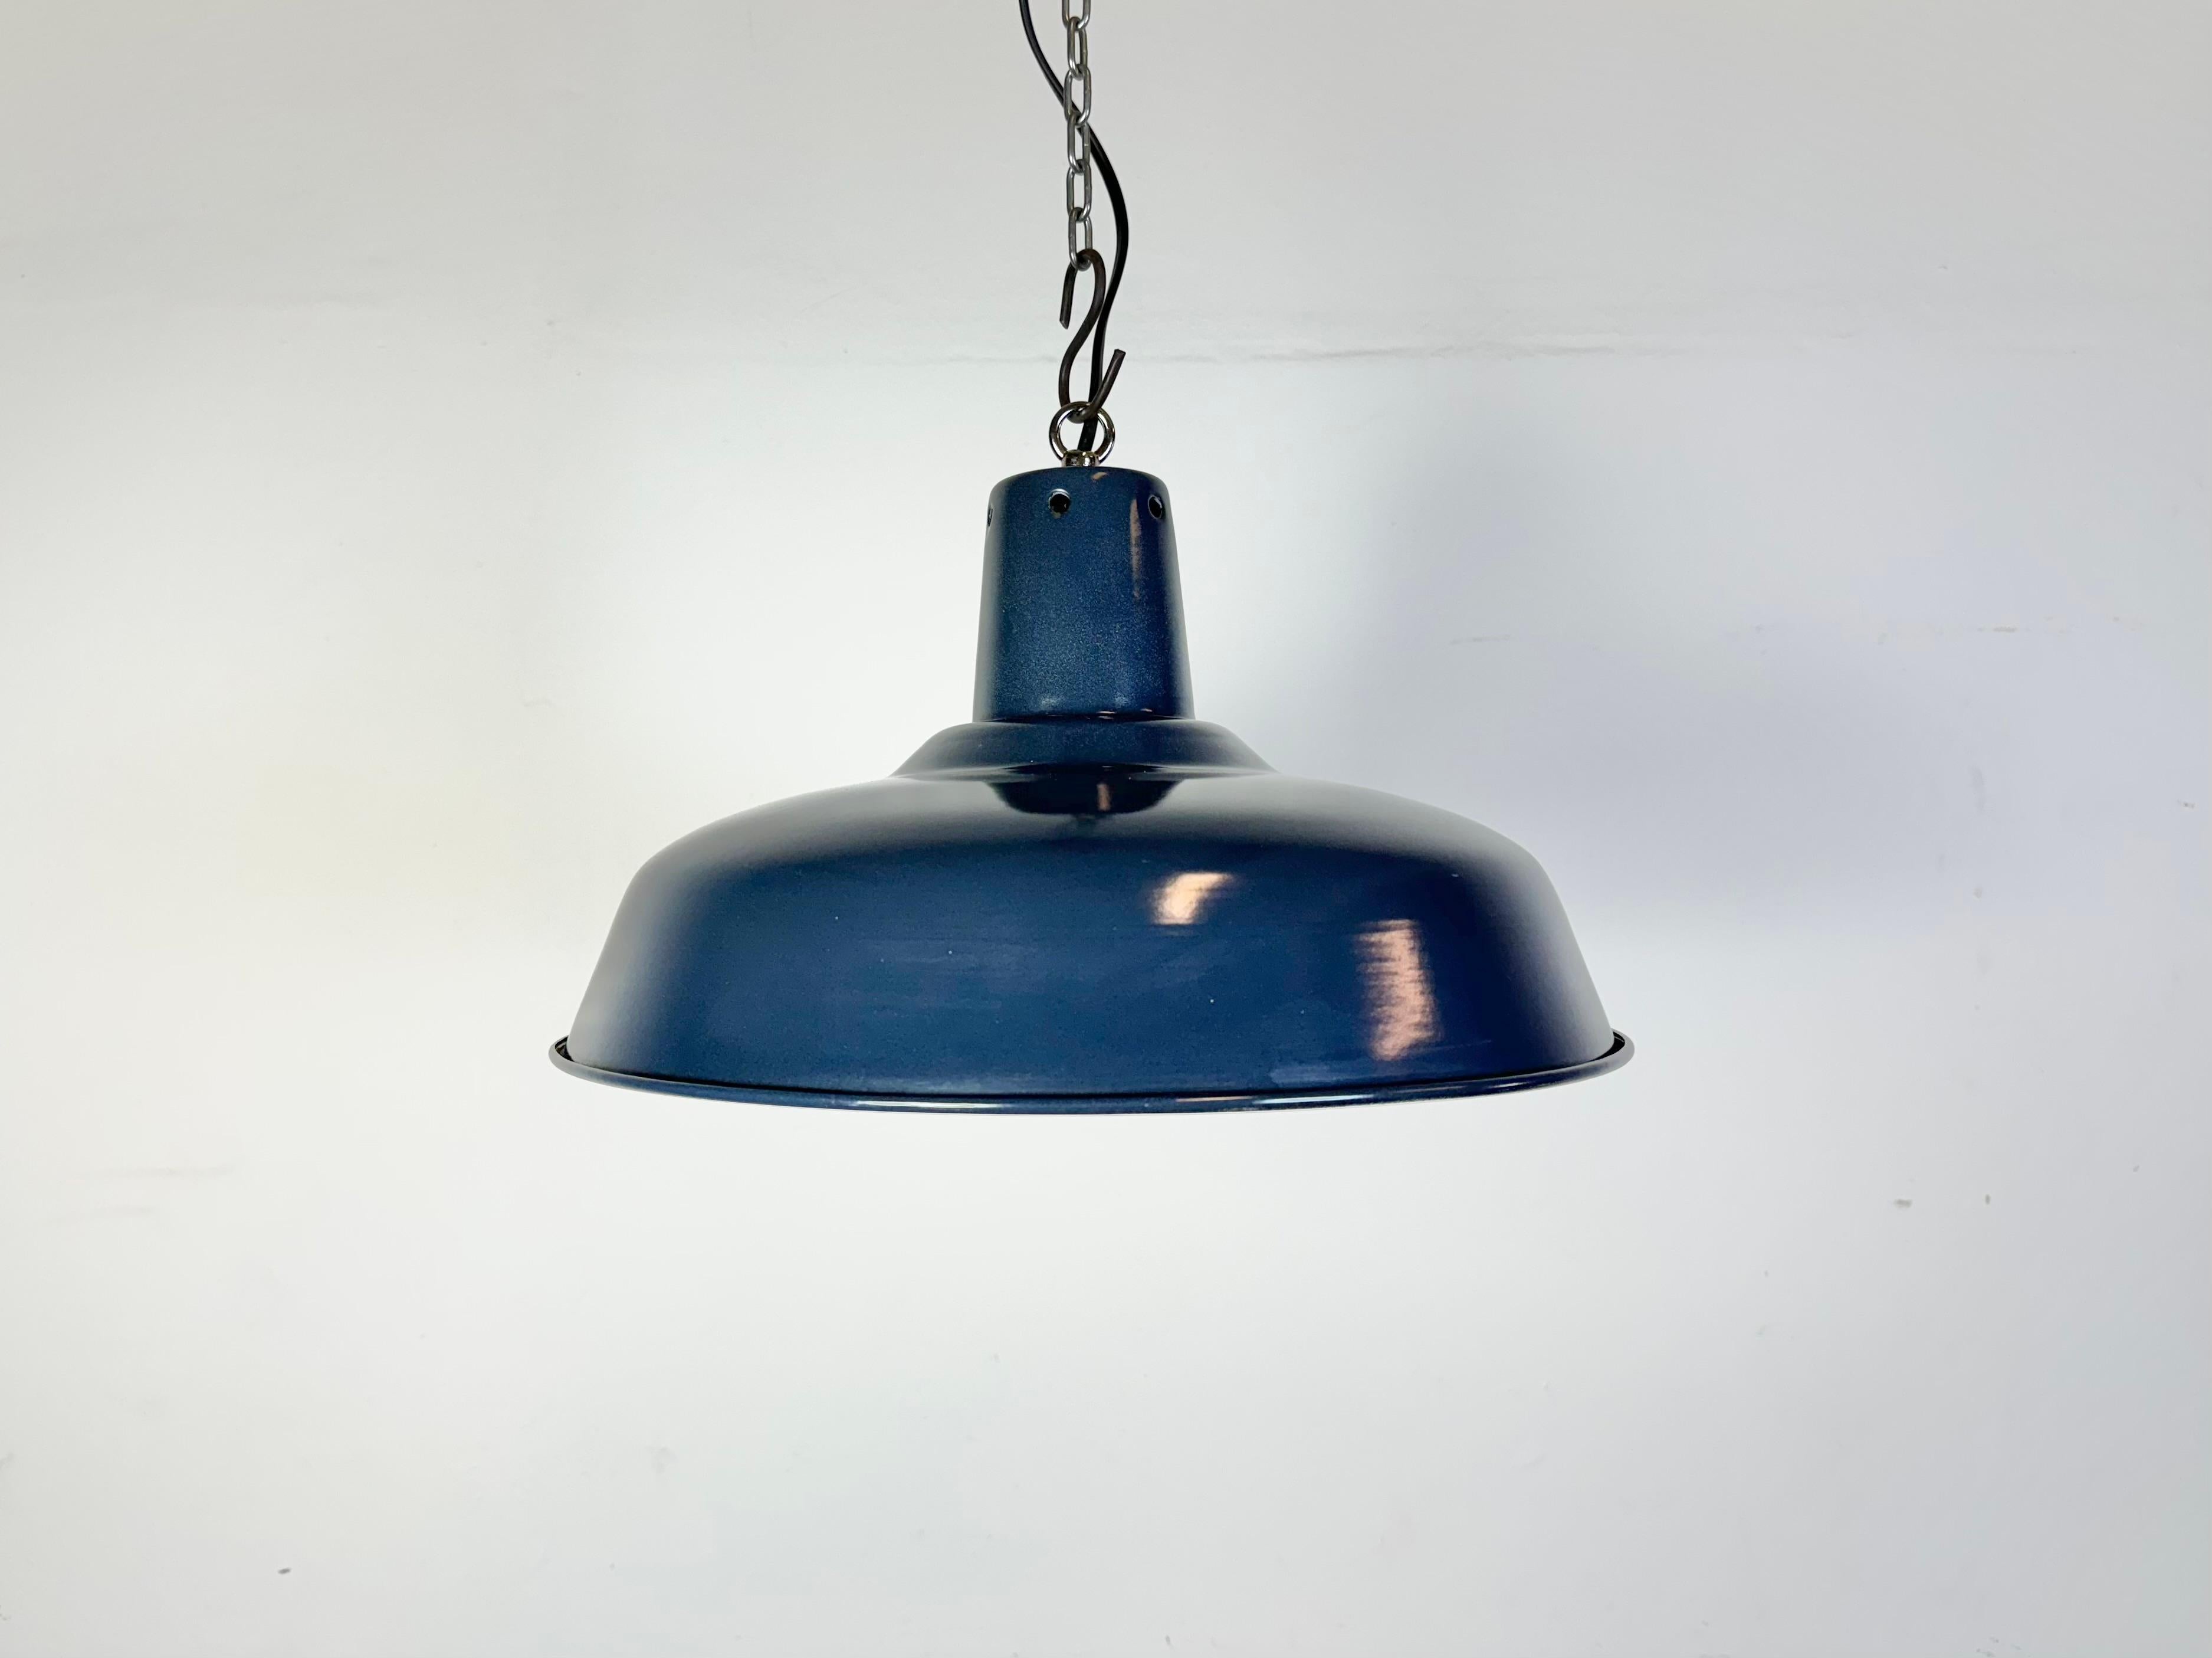 Suspension industrielle en émail bleu fabriquée en Italie dans les années 1960. Émail blanc à l'intérieur de la teinte. Dessus en fer. La douille est compatible avec les ampoules standard E 27/ E 26. Un nouveau fil. Le poids de la lampe est de 1 kg.